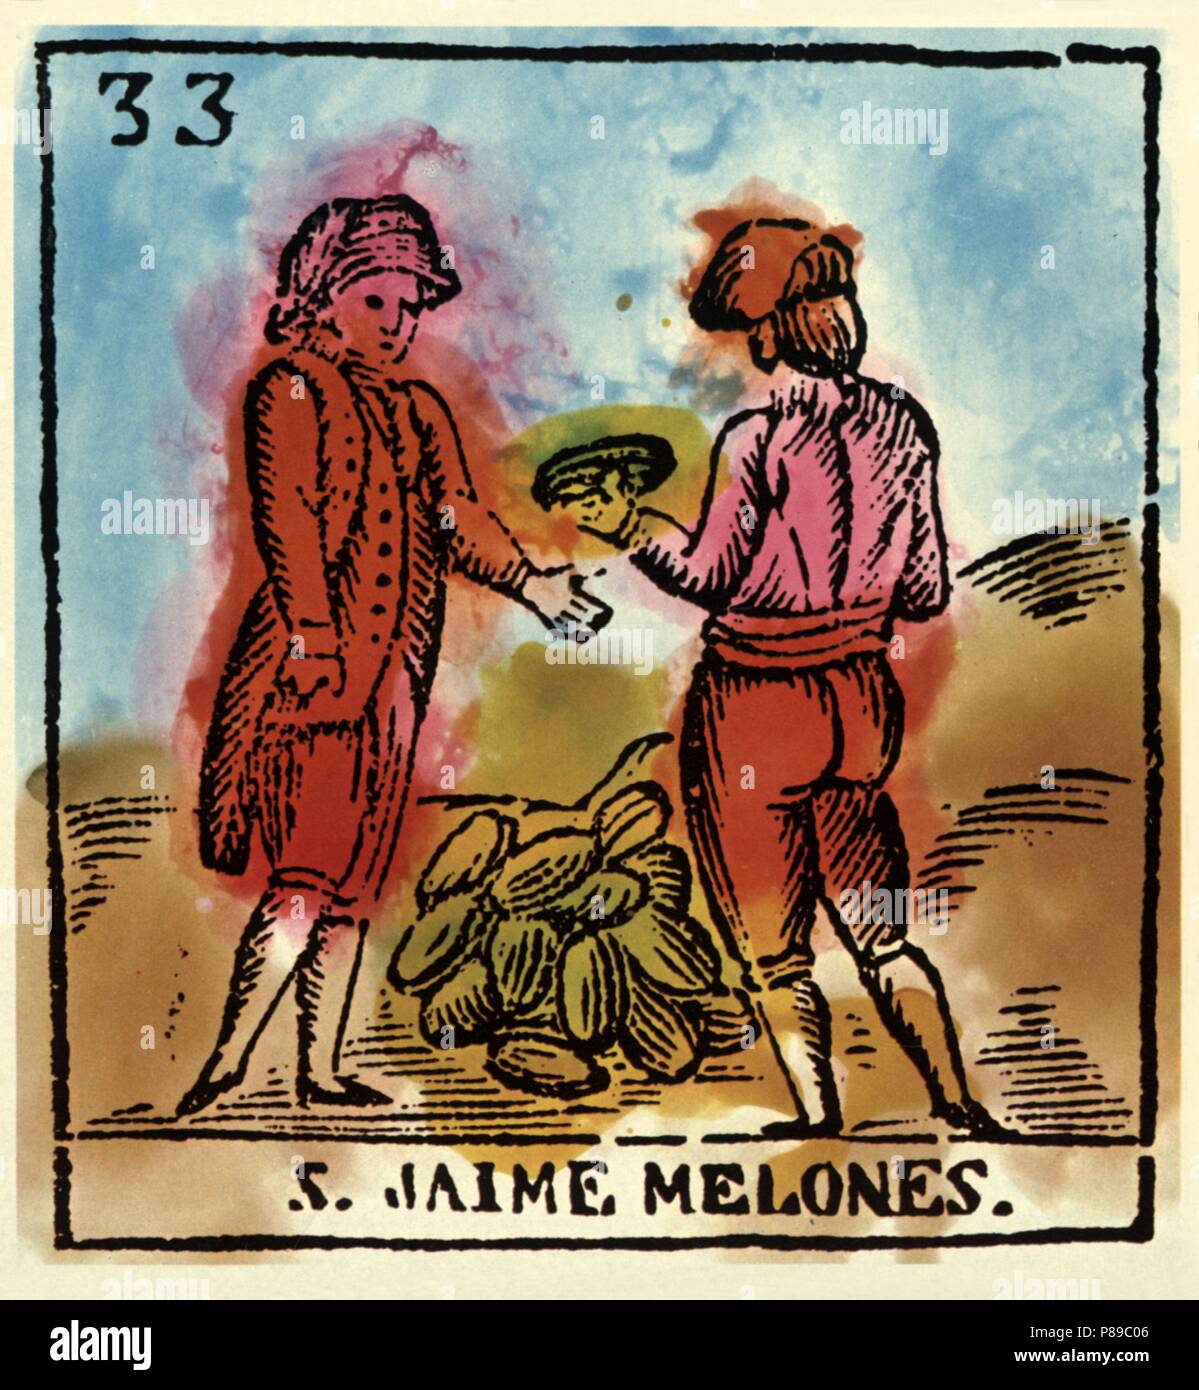 Catalunya. Fiestas y tradiciones populares. La festividad de San Jaime, coincide con la época de recolección de melones. Grabado coloreado del siglo XIX. Stock Photo